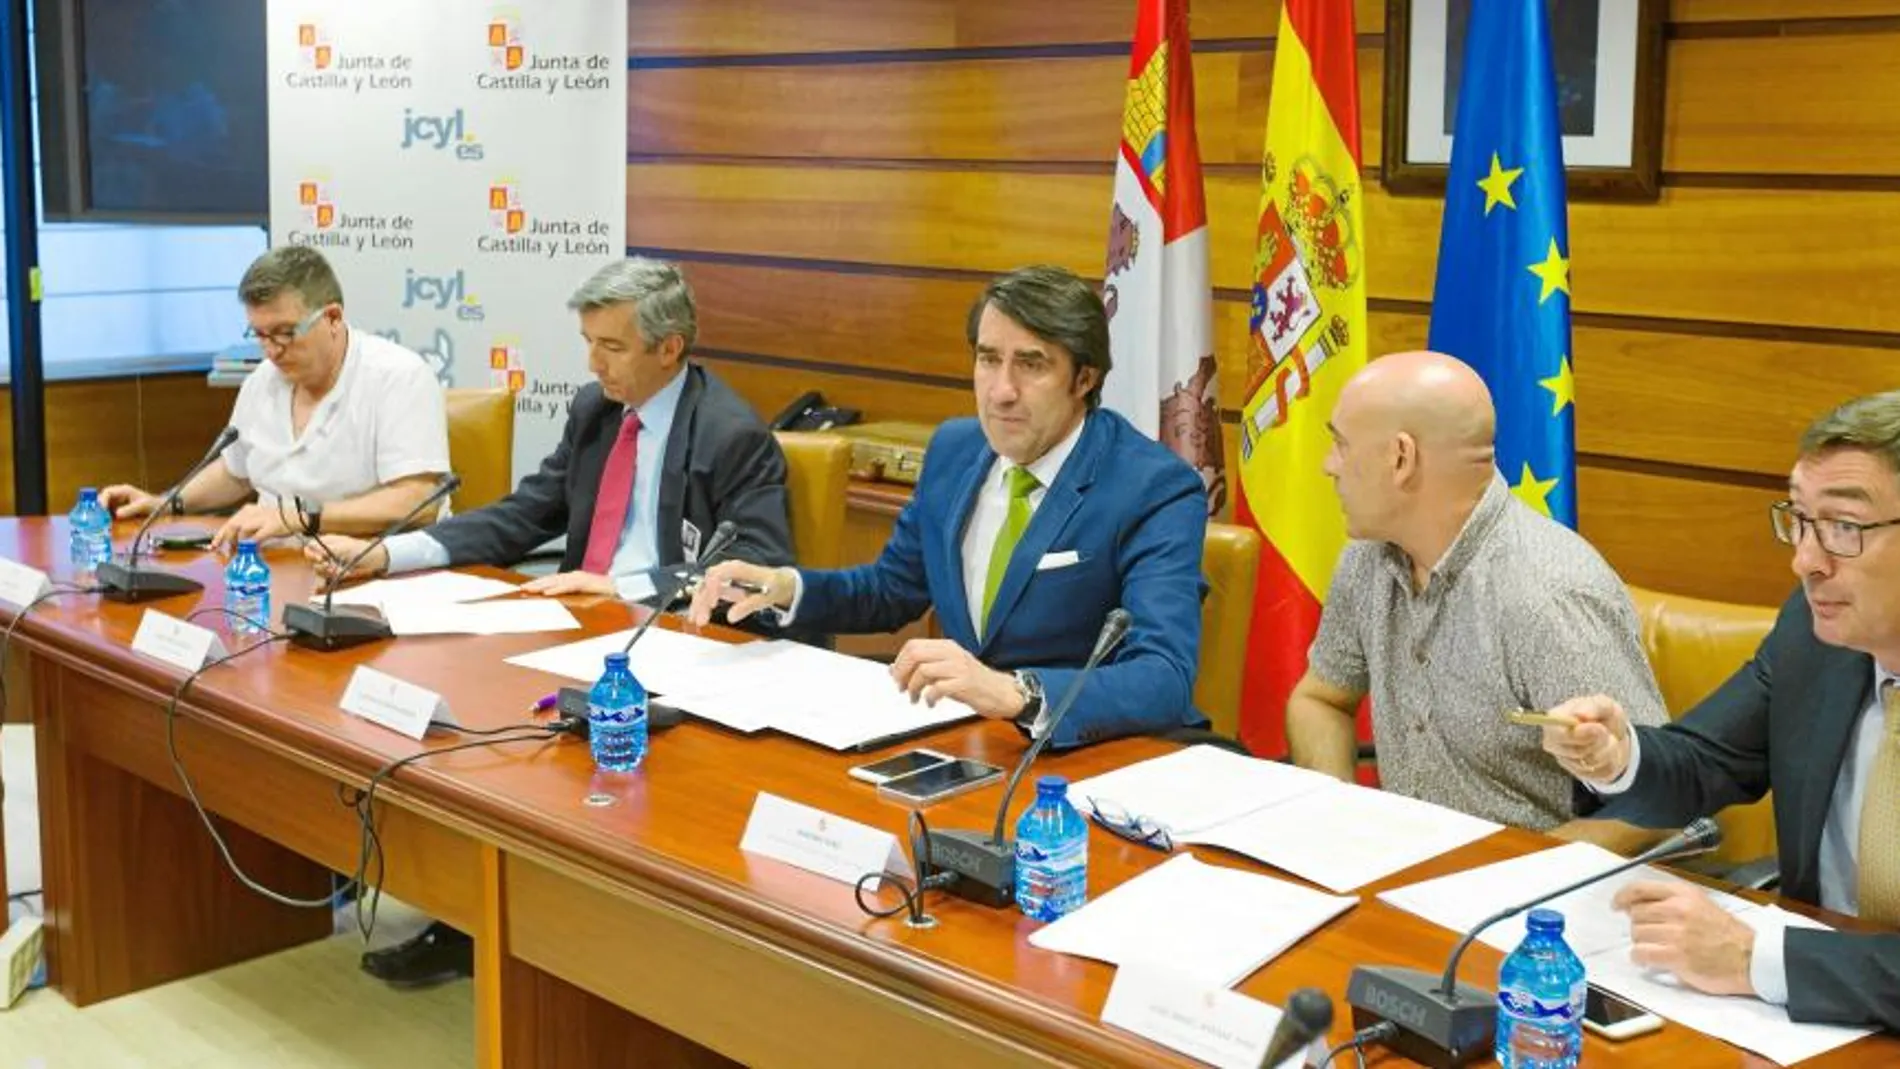 El consejero de Fomento y Medio Ambiente, Juan Carlos Suárez-Quiñones, presenta el III convenio colectivo forestal autonómico firmado por los sindicatos y la patronal, para los próximos cuatro años, ayer en Valladolid